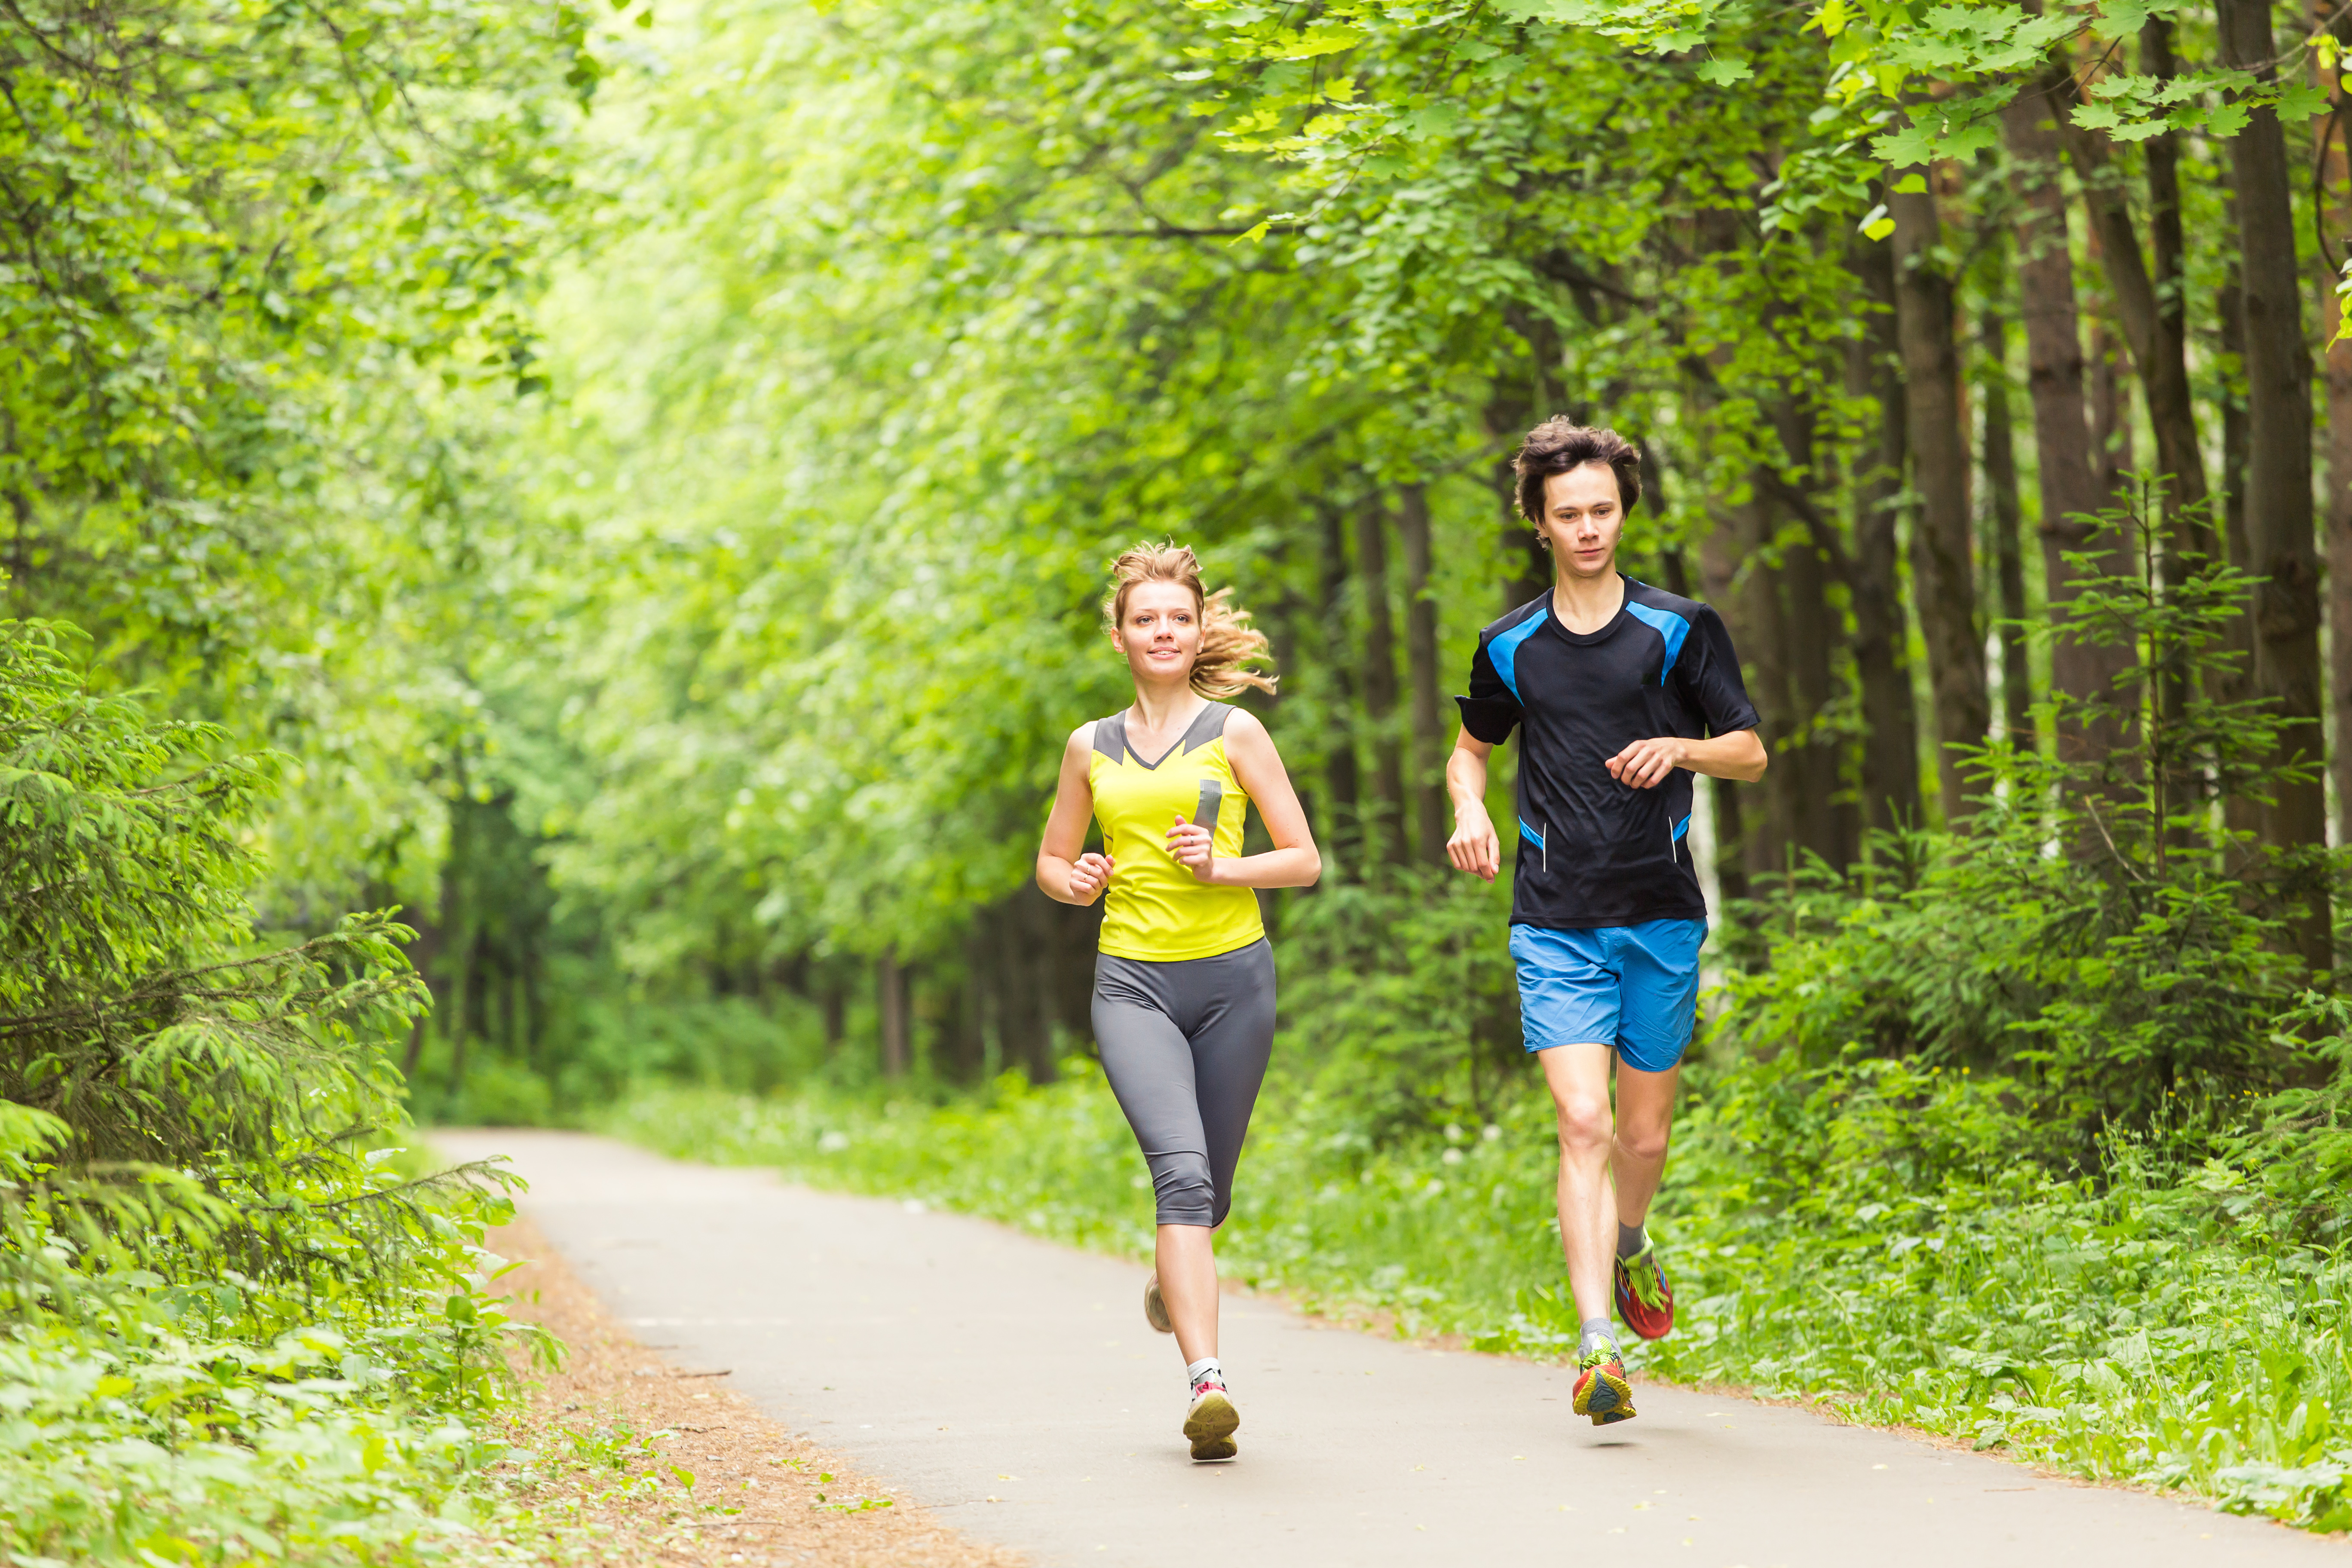 La course à pied est un sport bénéfique pour la santé. © Satura, Adobe Stock